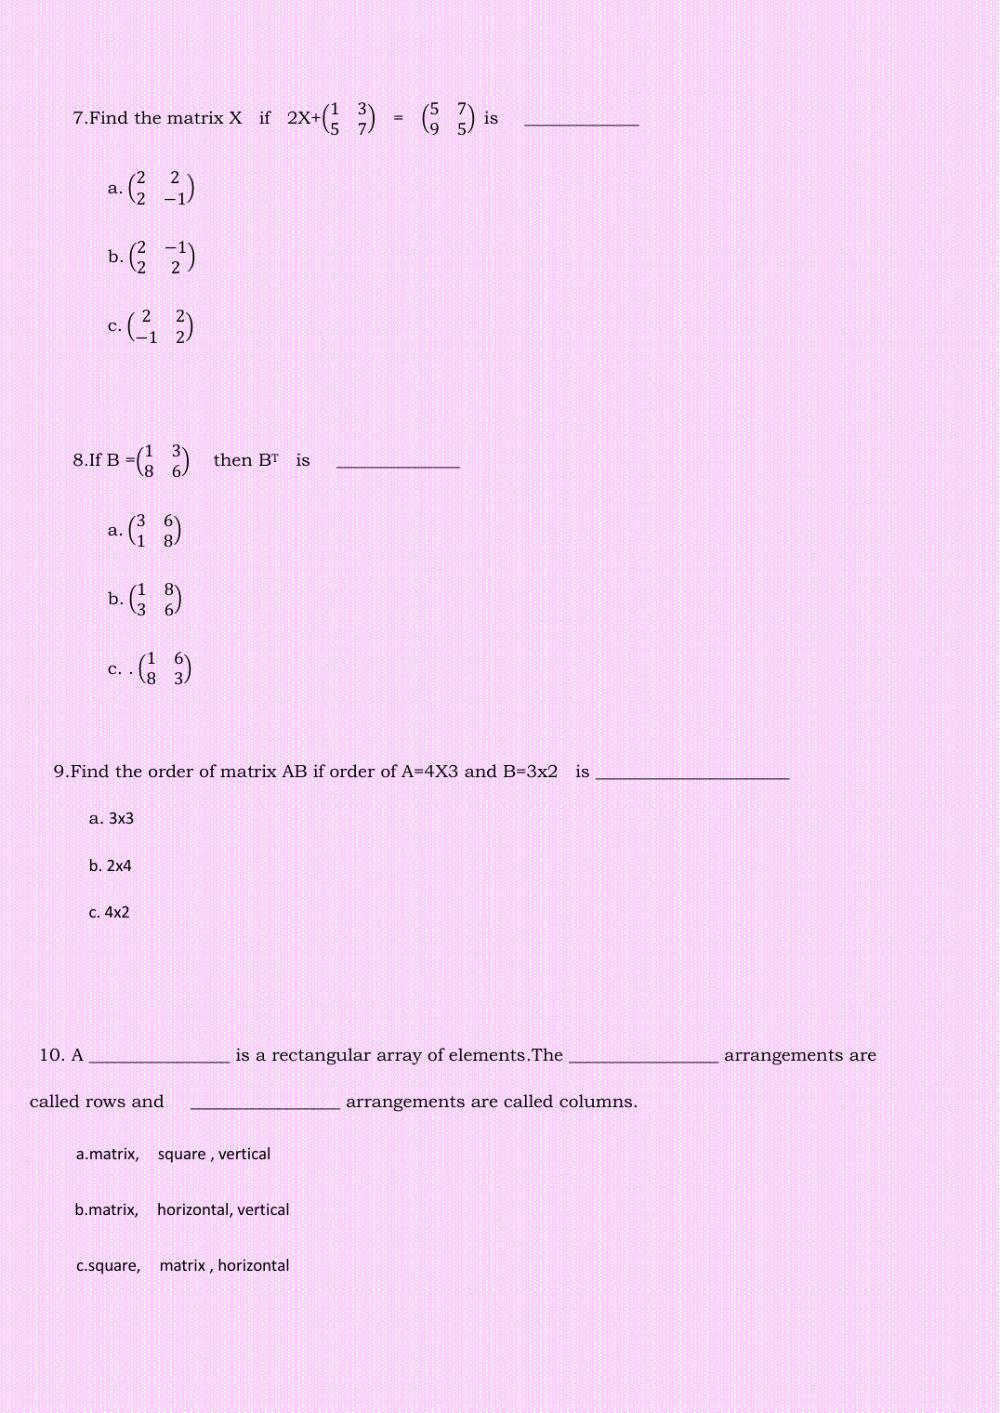 Class 10 Maths Term -II Worksheet - 1